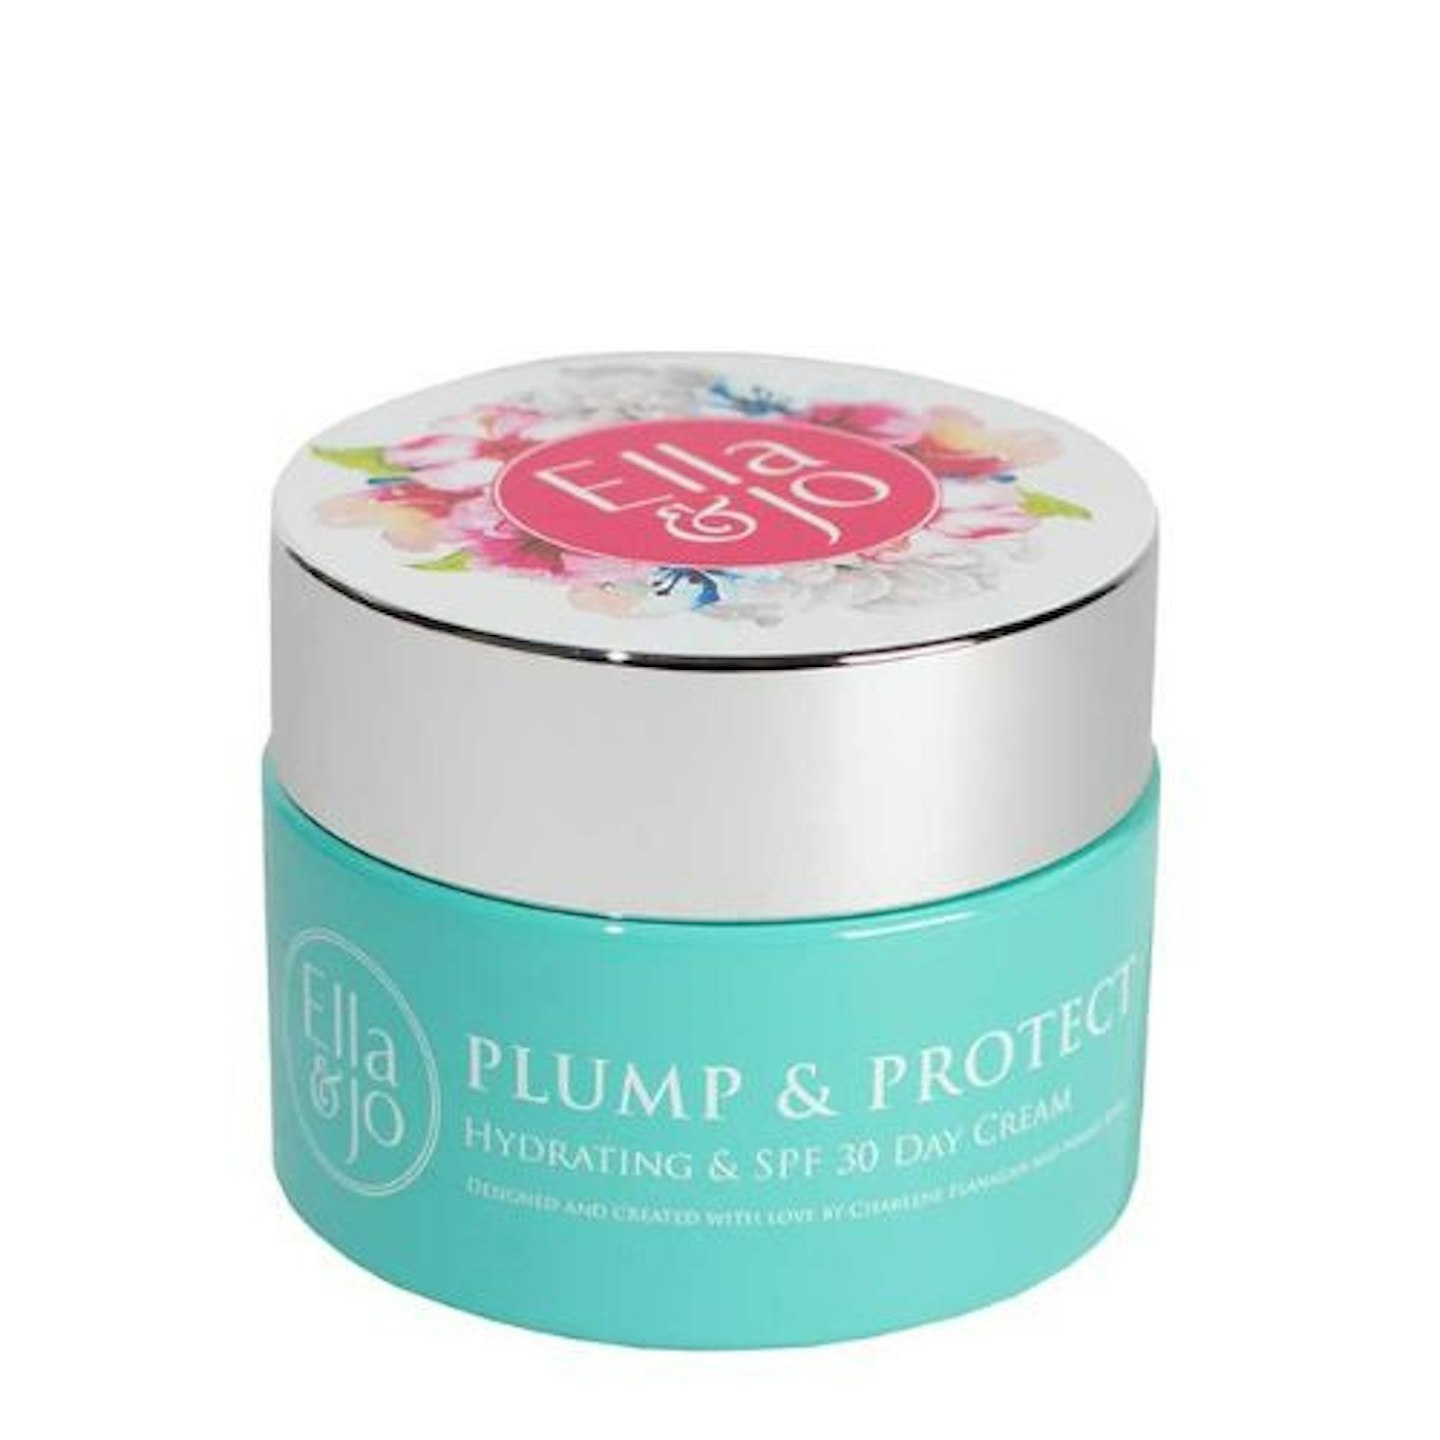 Ella & Jo Plump and Protect Day Cream SPF 30